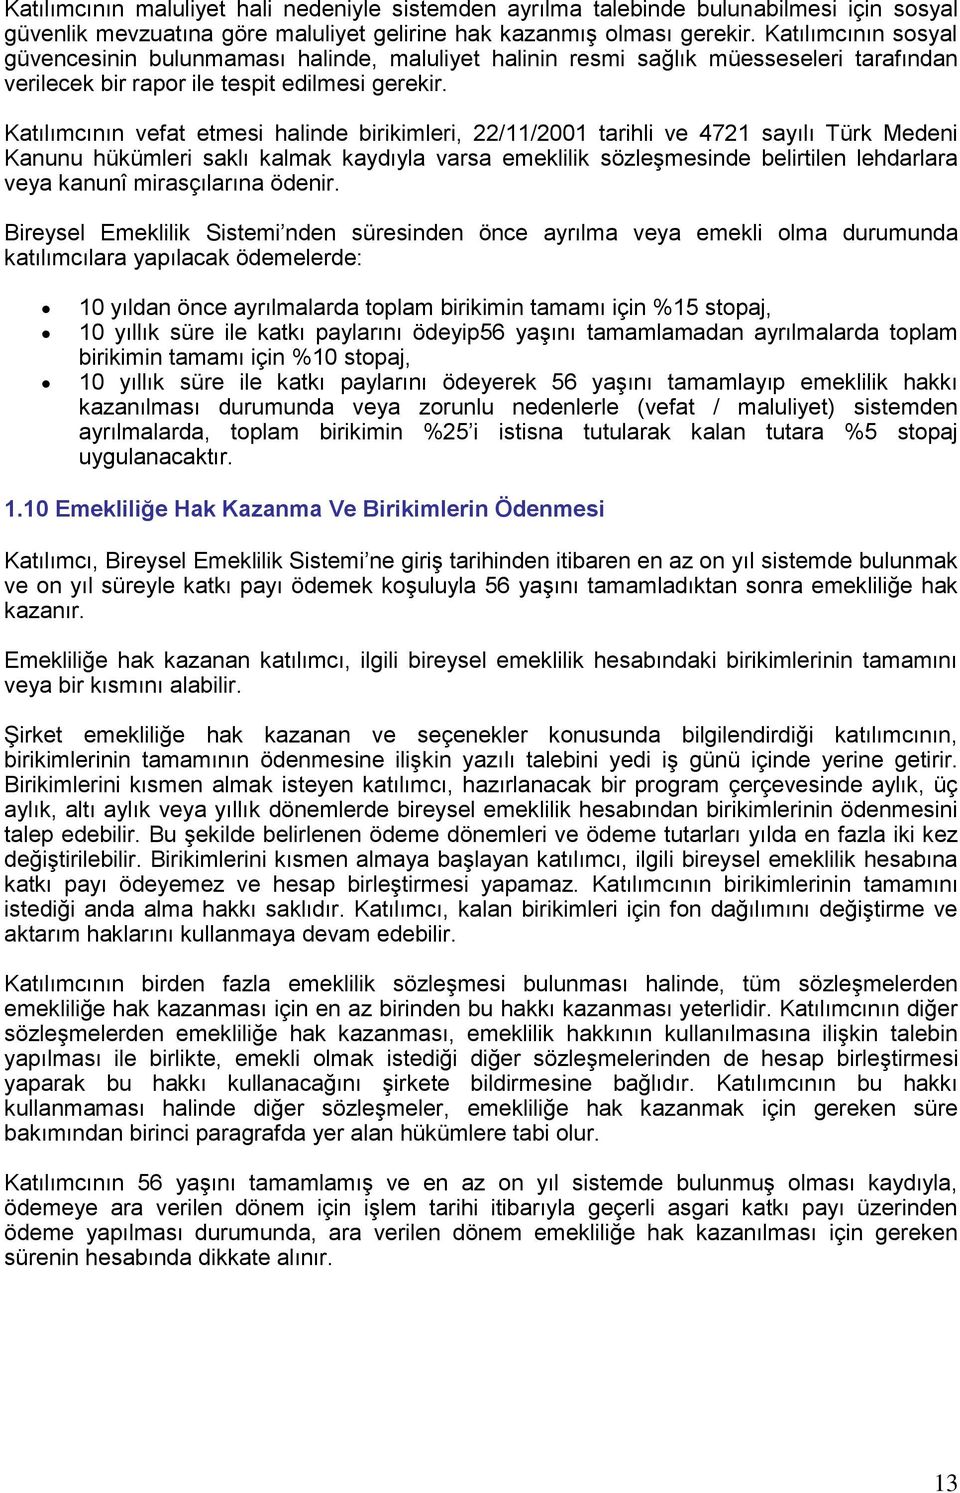 Katılımcının vefat etmesi halinde birikimleri, 22/11/2001 tarihli ve 4721 sayılı Türk Medeni Kanunu hükümleri saklı kalmak kaydıyla varsa emeklilik sözleşmesinde belirtilen lehdarlara veya kanunî